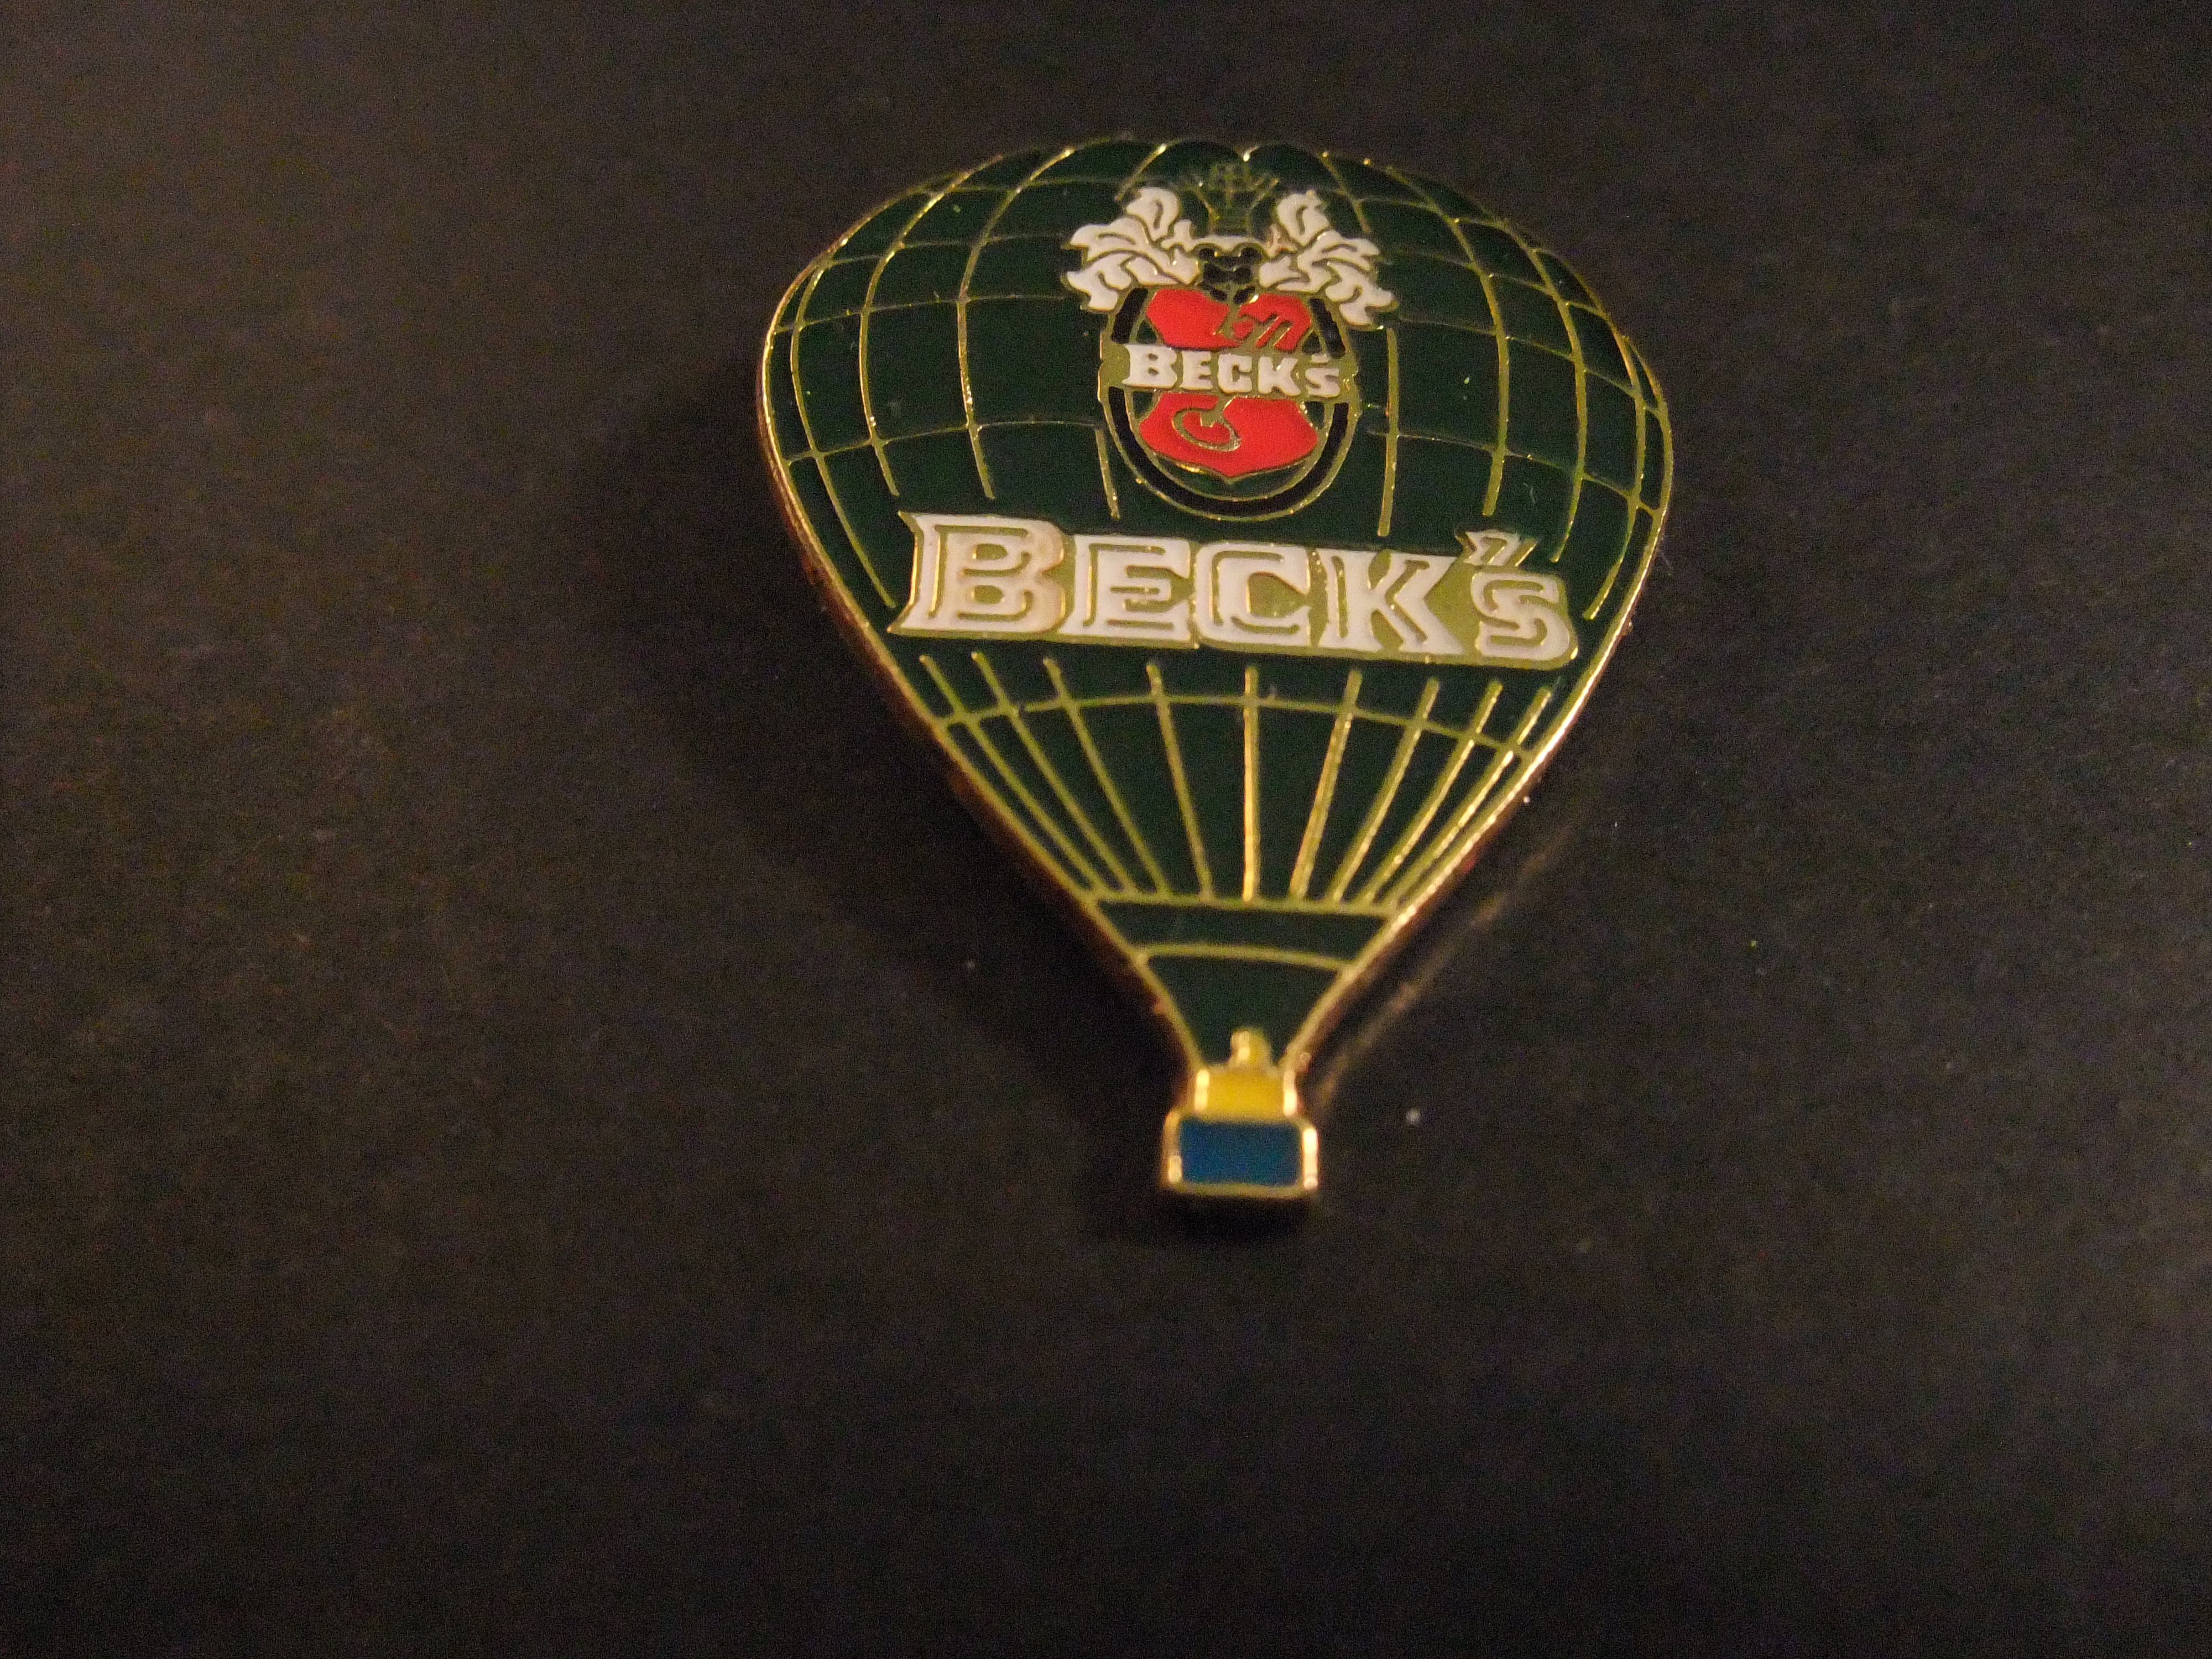 Beck's bierbrouwerij ( heteluchtballon )